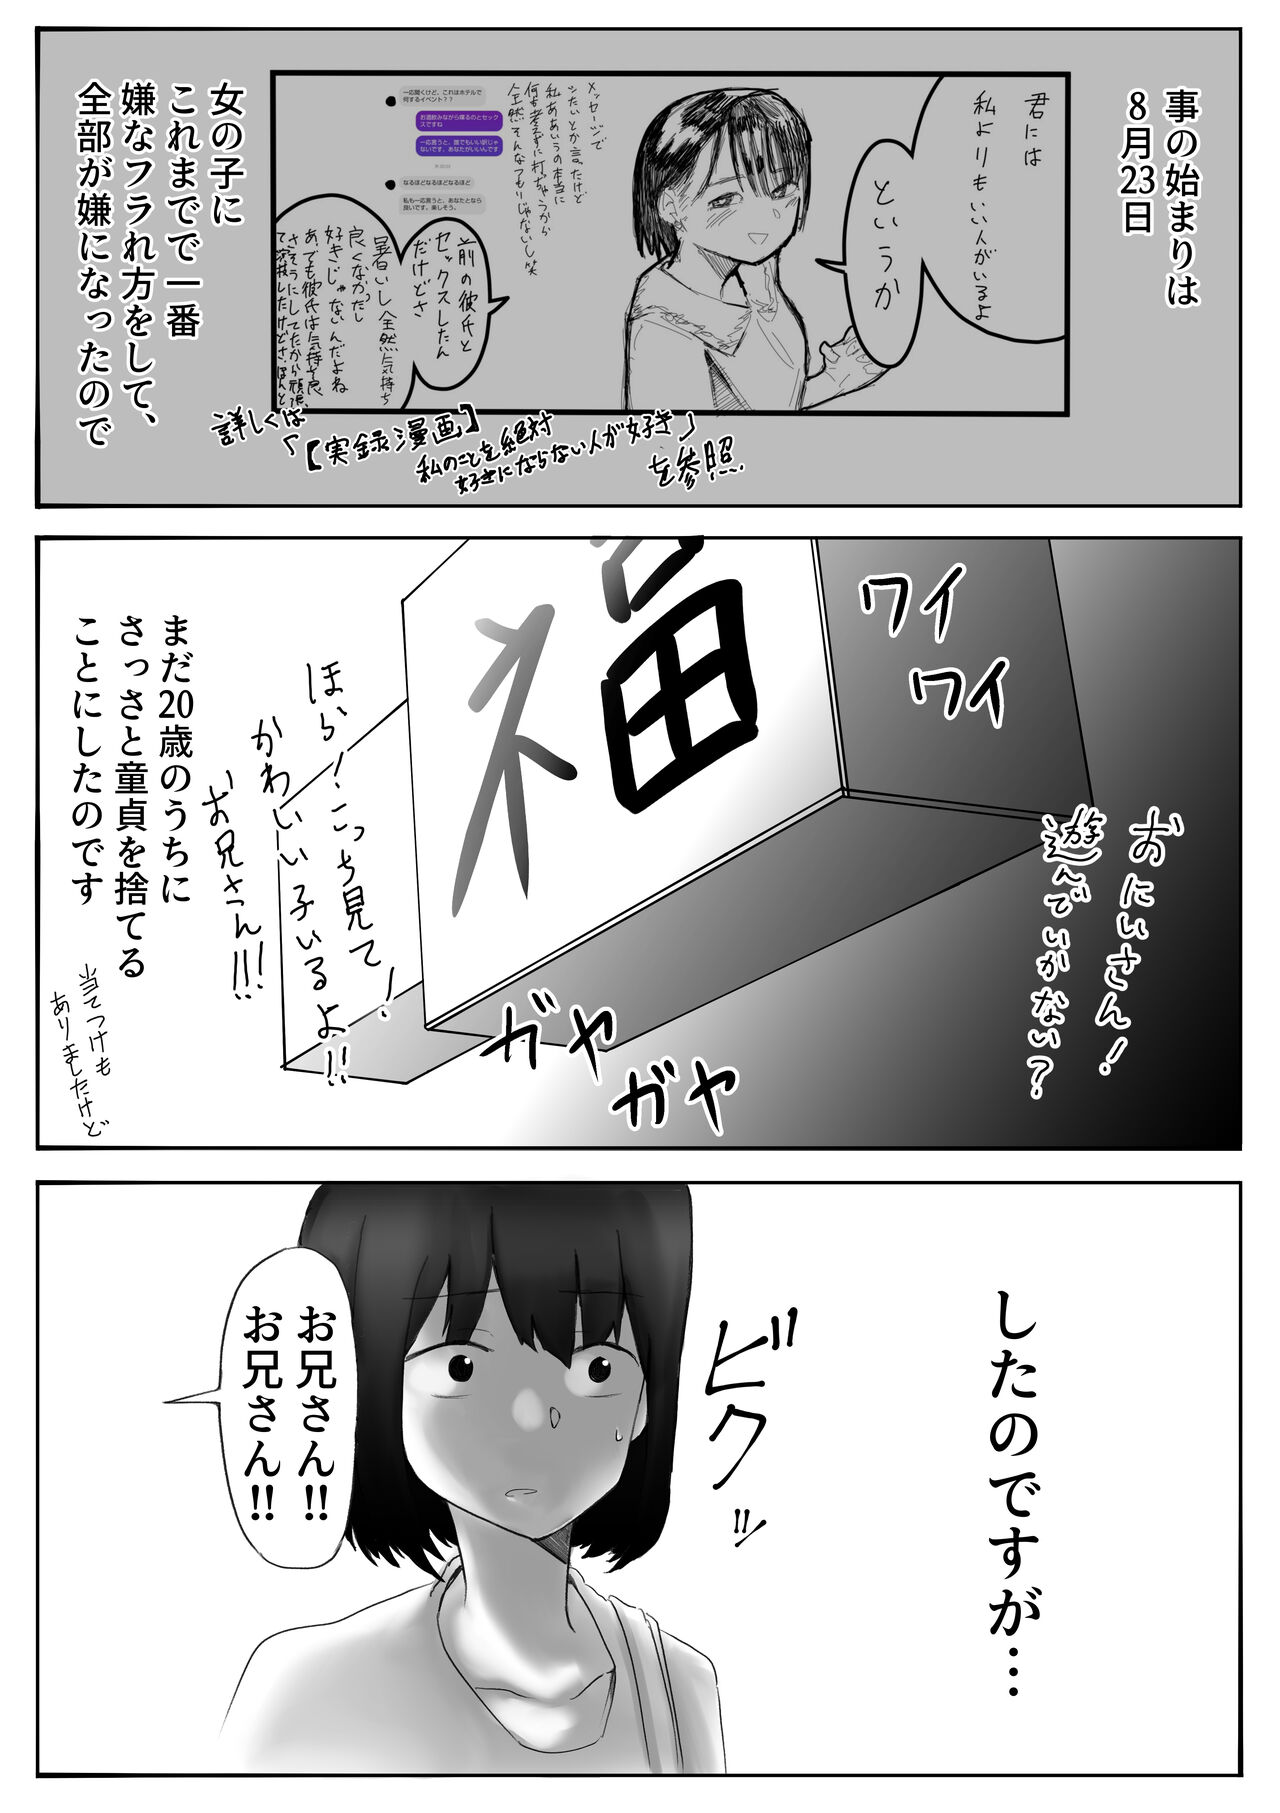 [てと] 【風俗レポ漫画】飛田新地で童貞を捨てた話